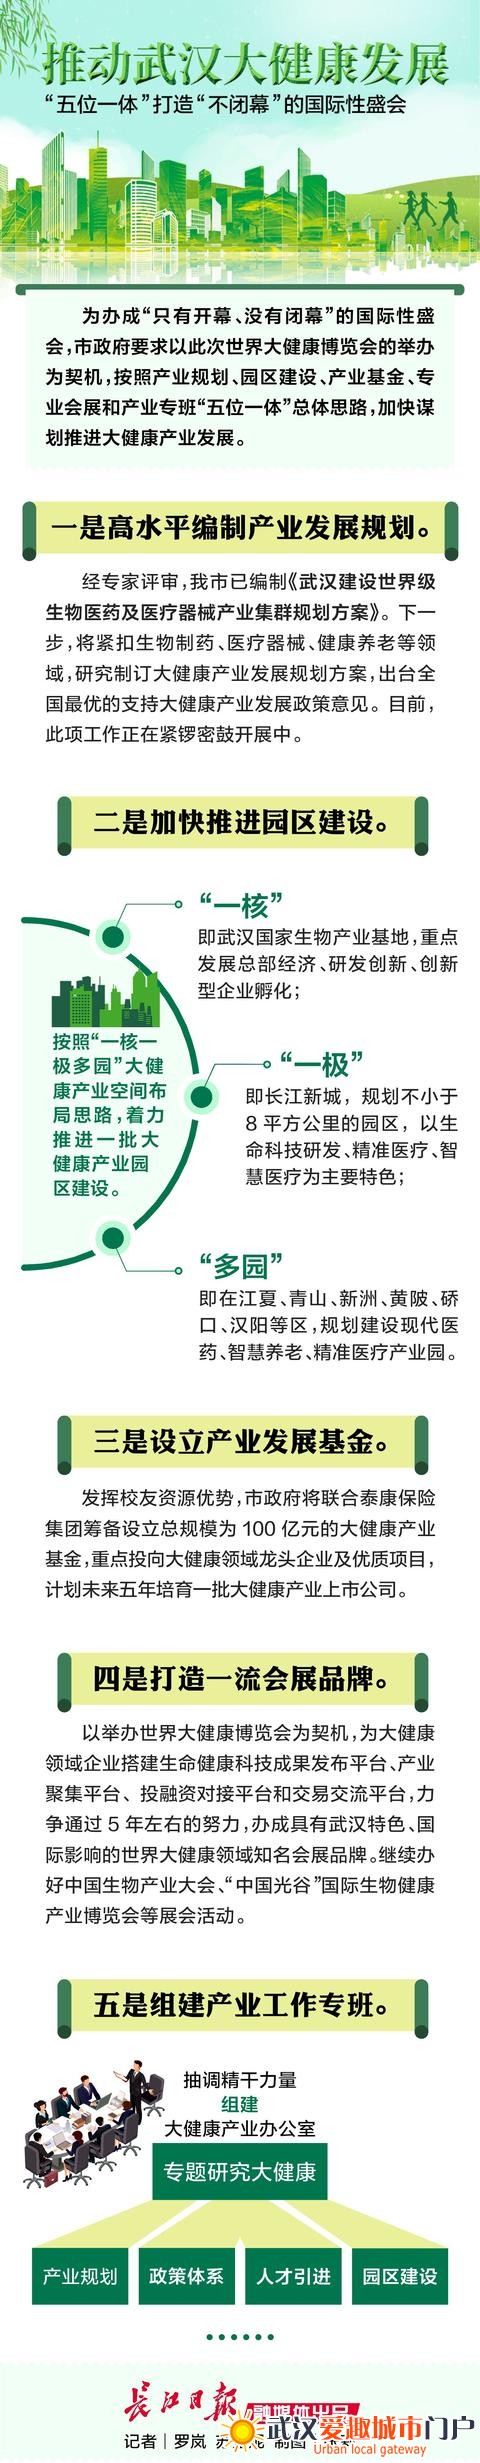 一场“没有闭幕”的国际盛会，武汉4月将举办世界大健康博览会，市民可免费参观